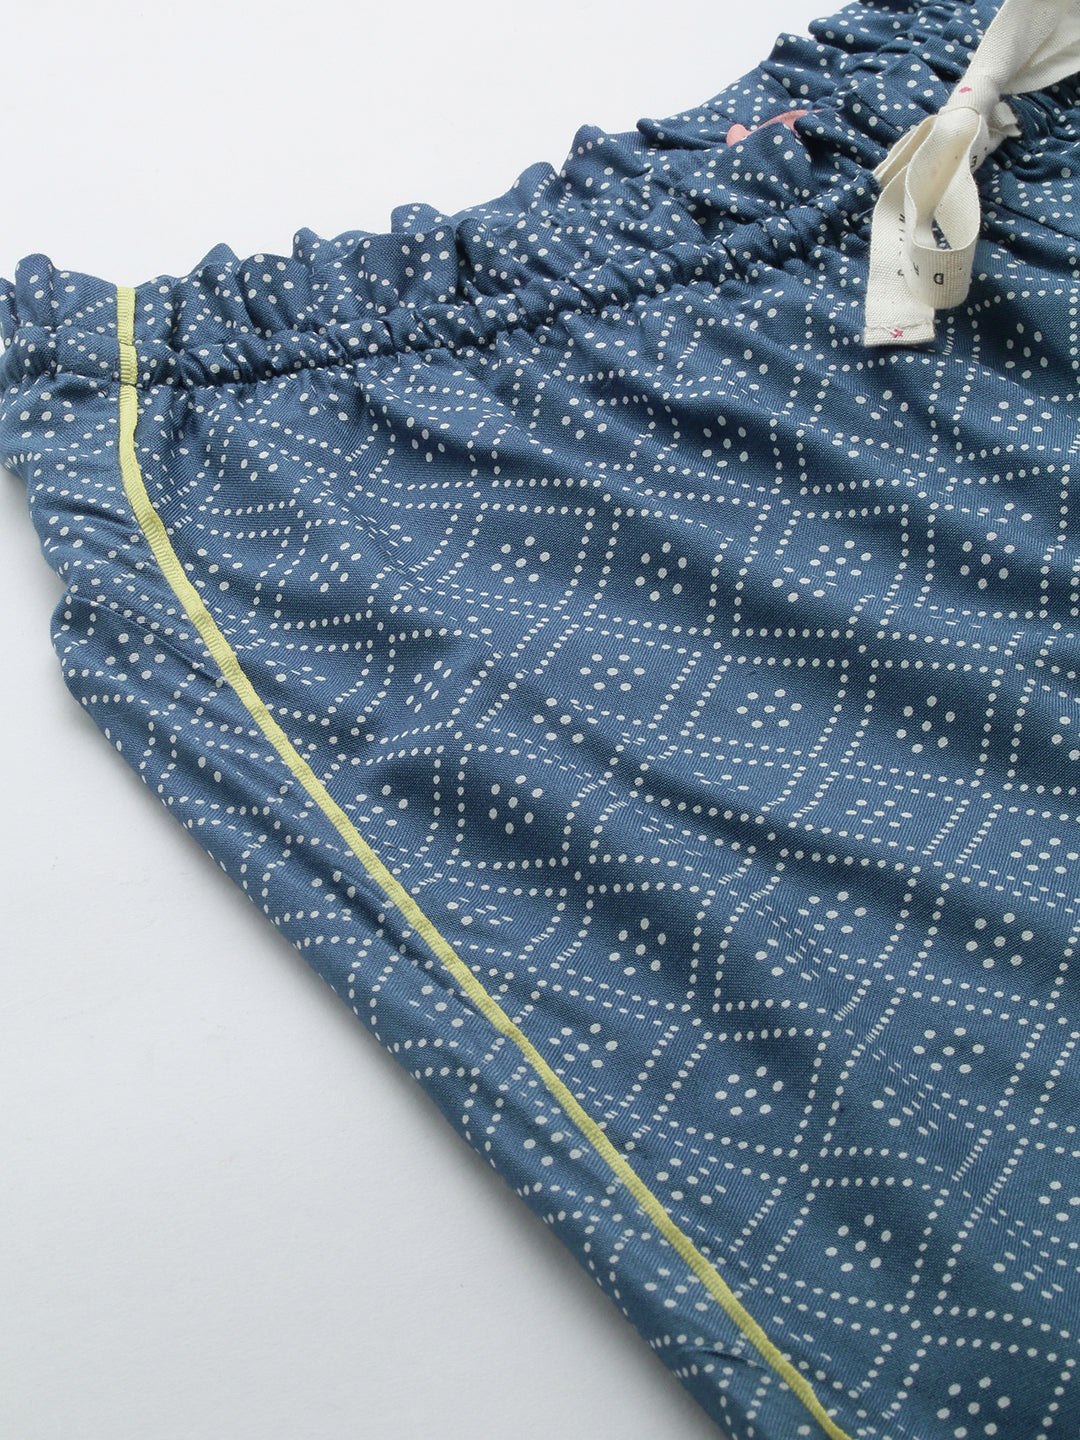 Printed Rayon Pyjamas With Contrast Piping